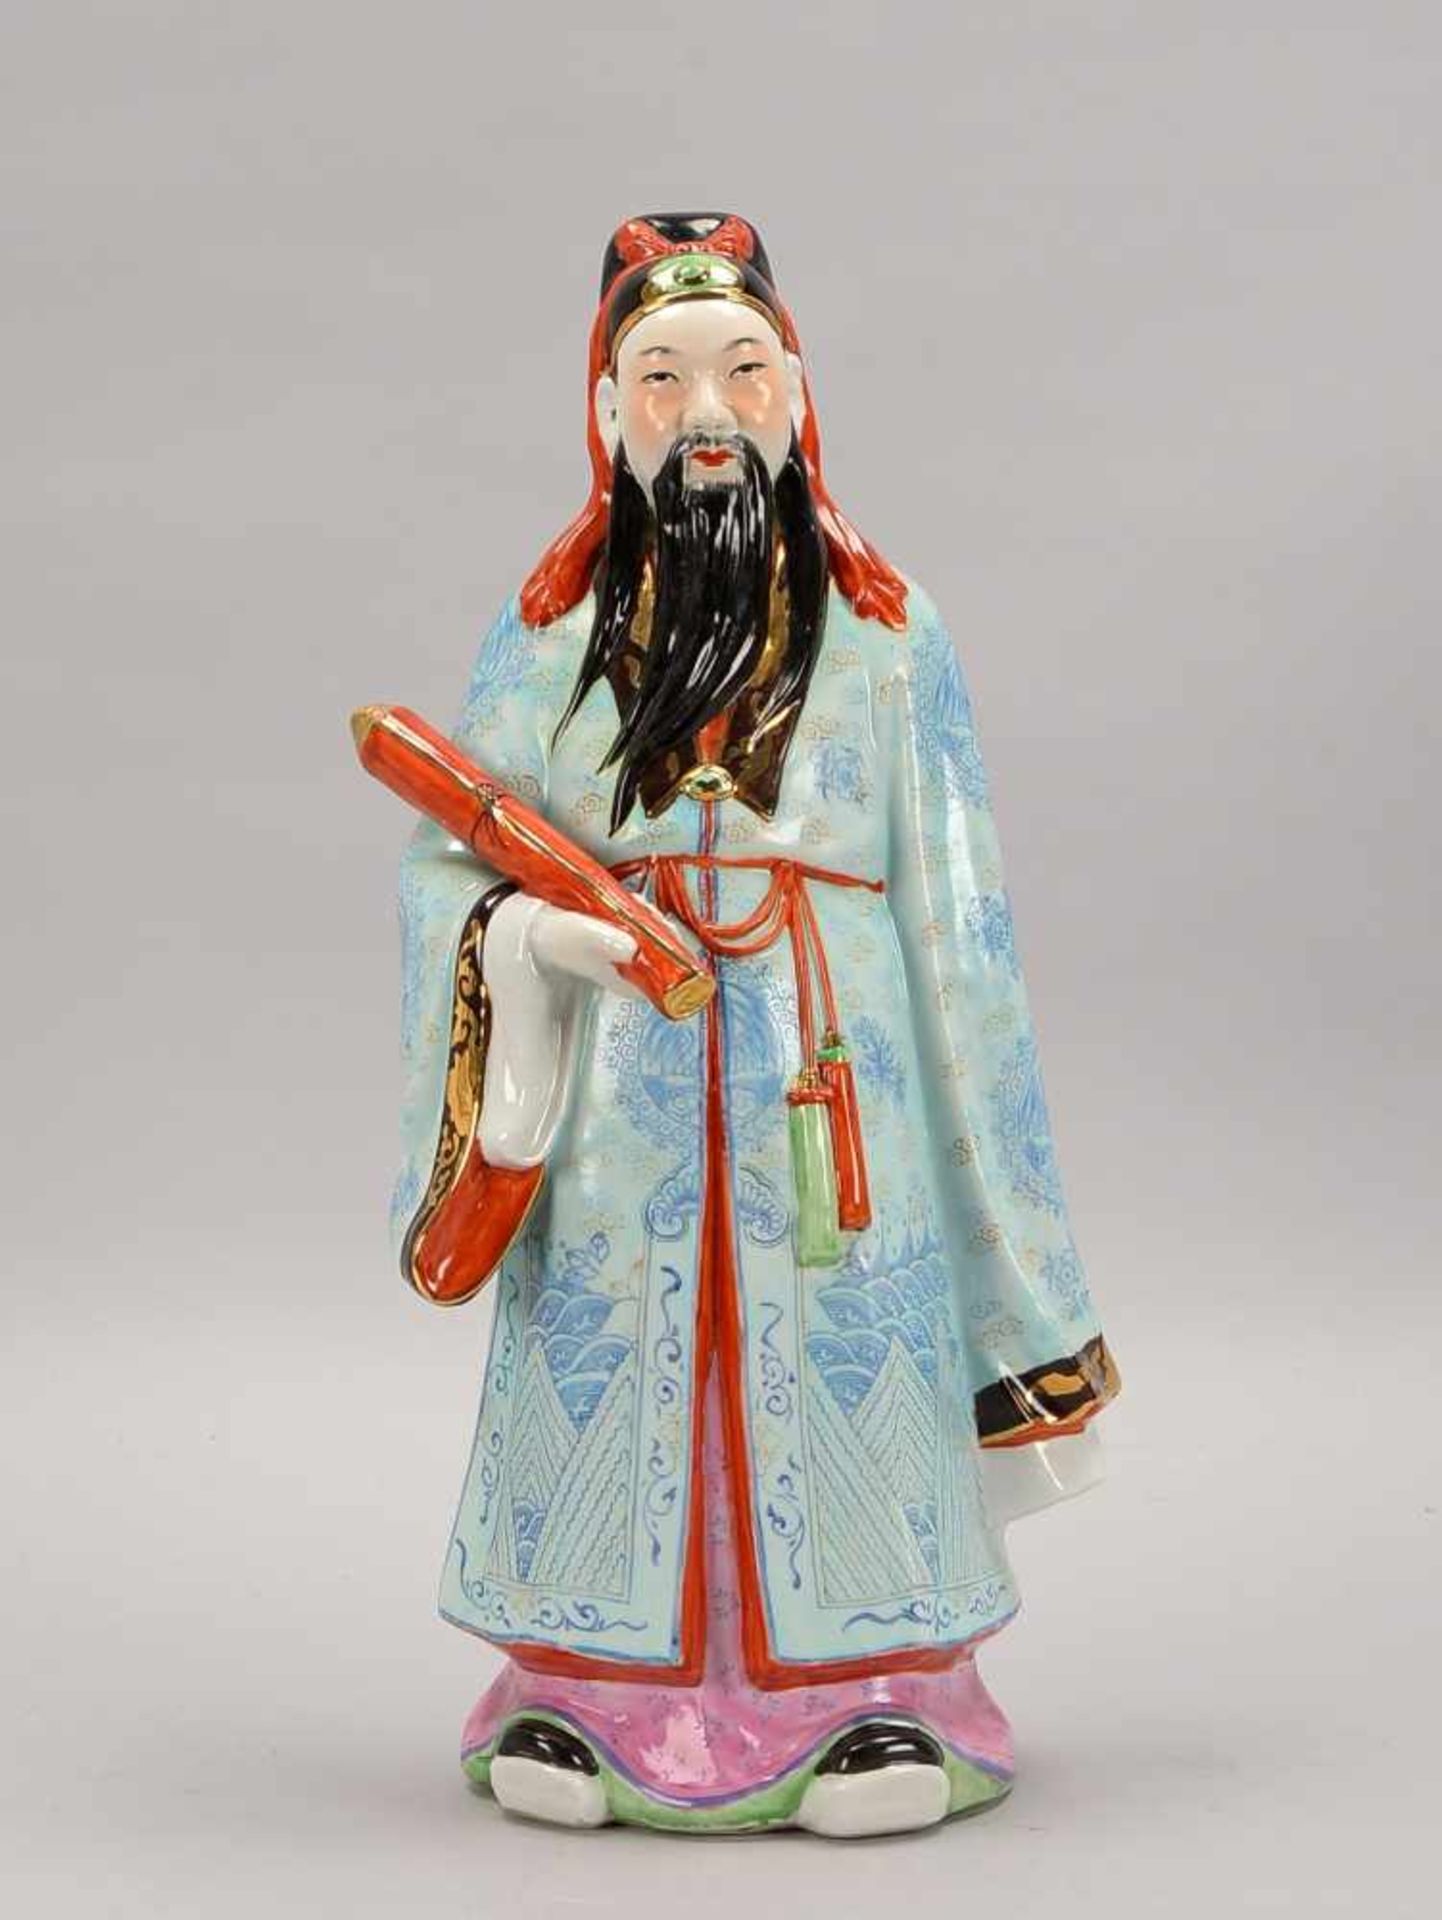 Porzellanfigur, China, 'Chinesischer Weiser' (gute Gesundheit symbolisierend), farbig gefasst,